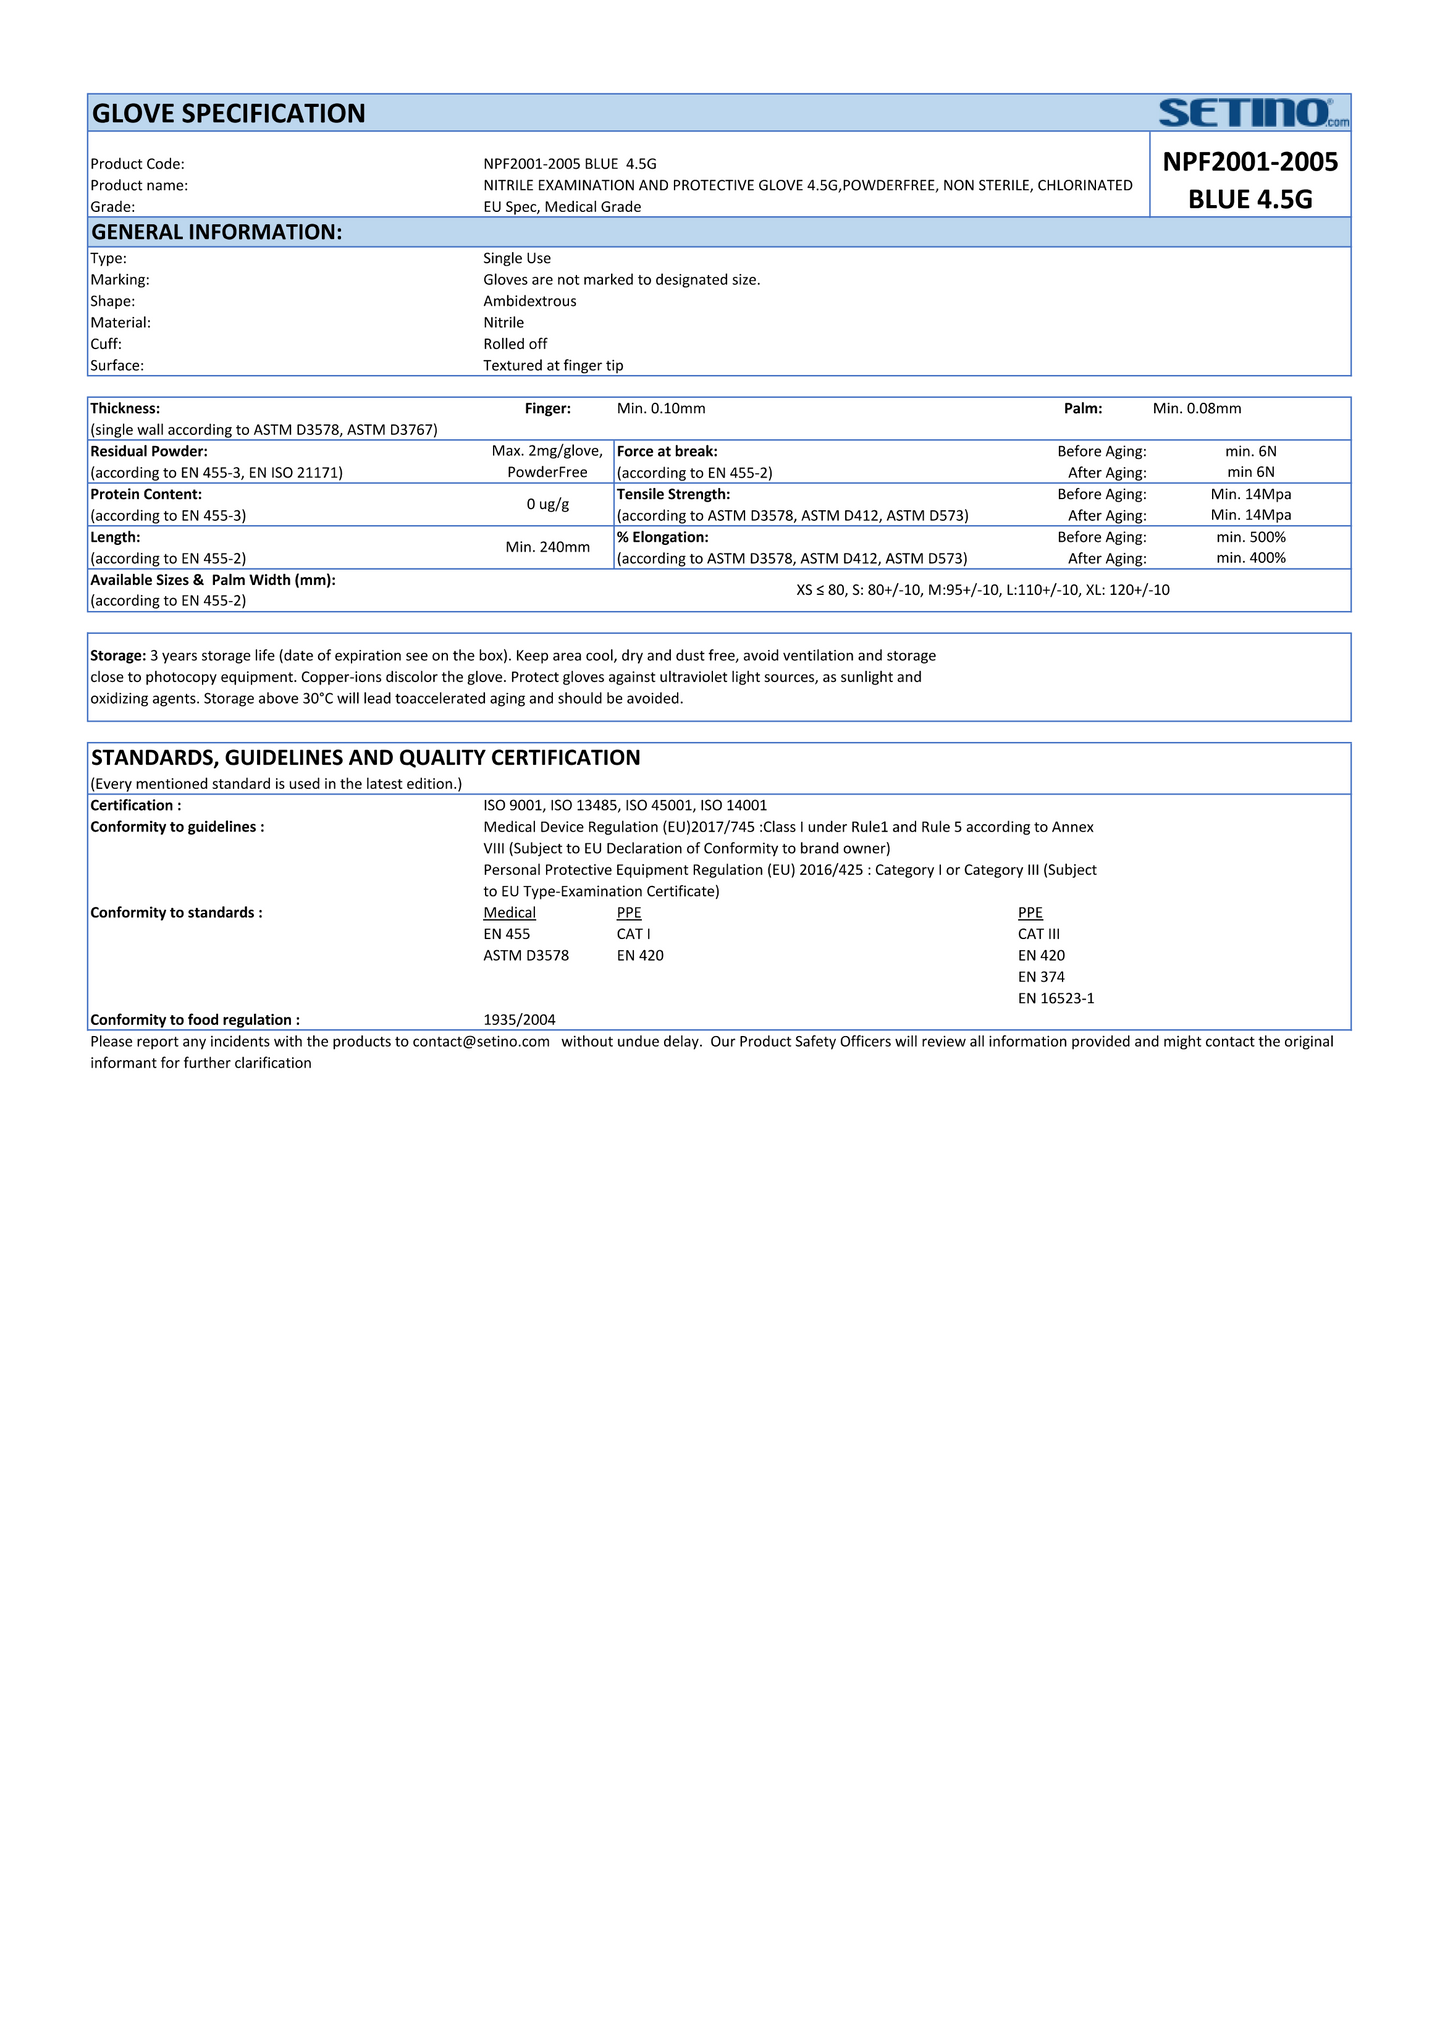 NPF2001-2005 guante de examen y protección de nitrilo sin polvo azul 4,5 gramos